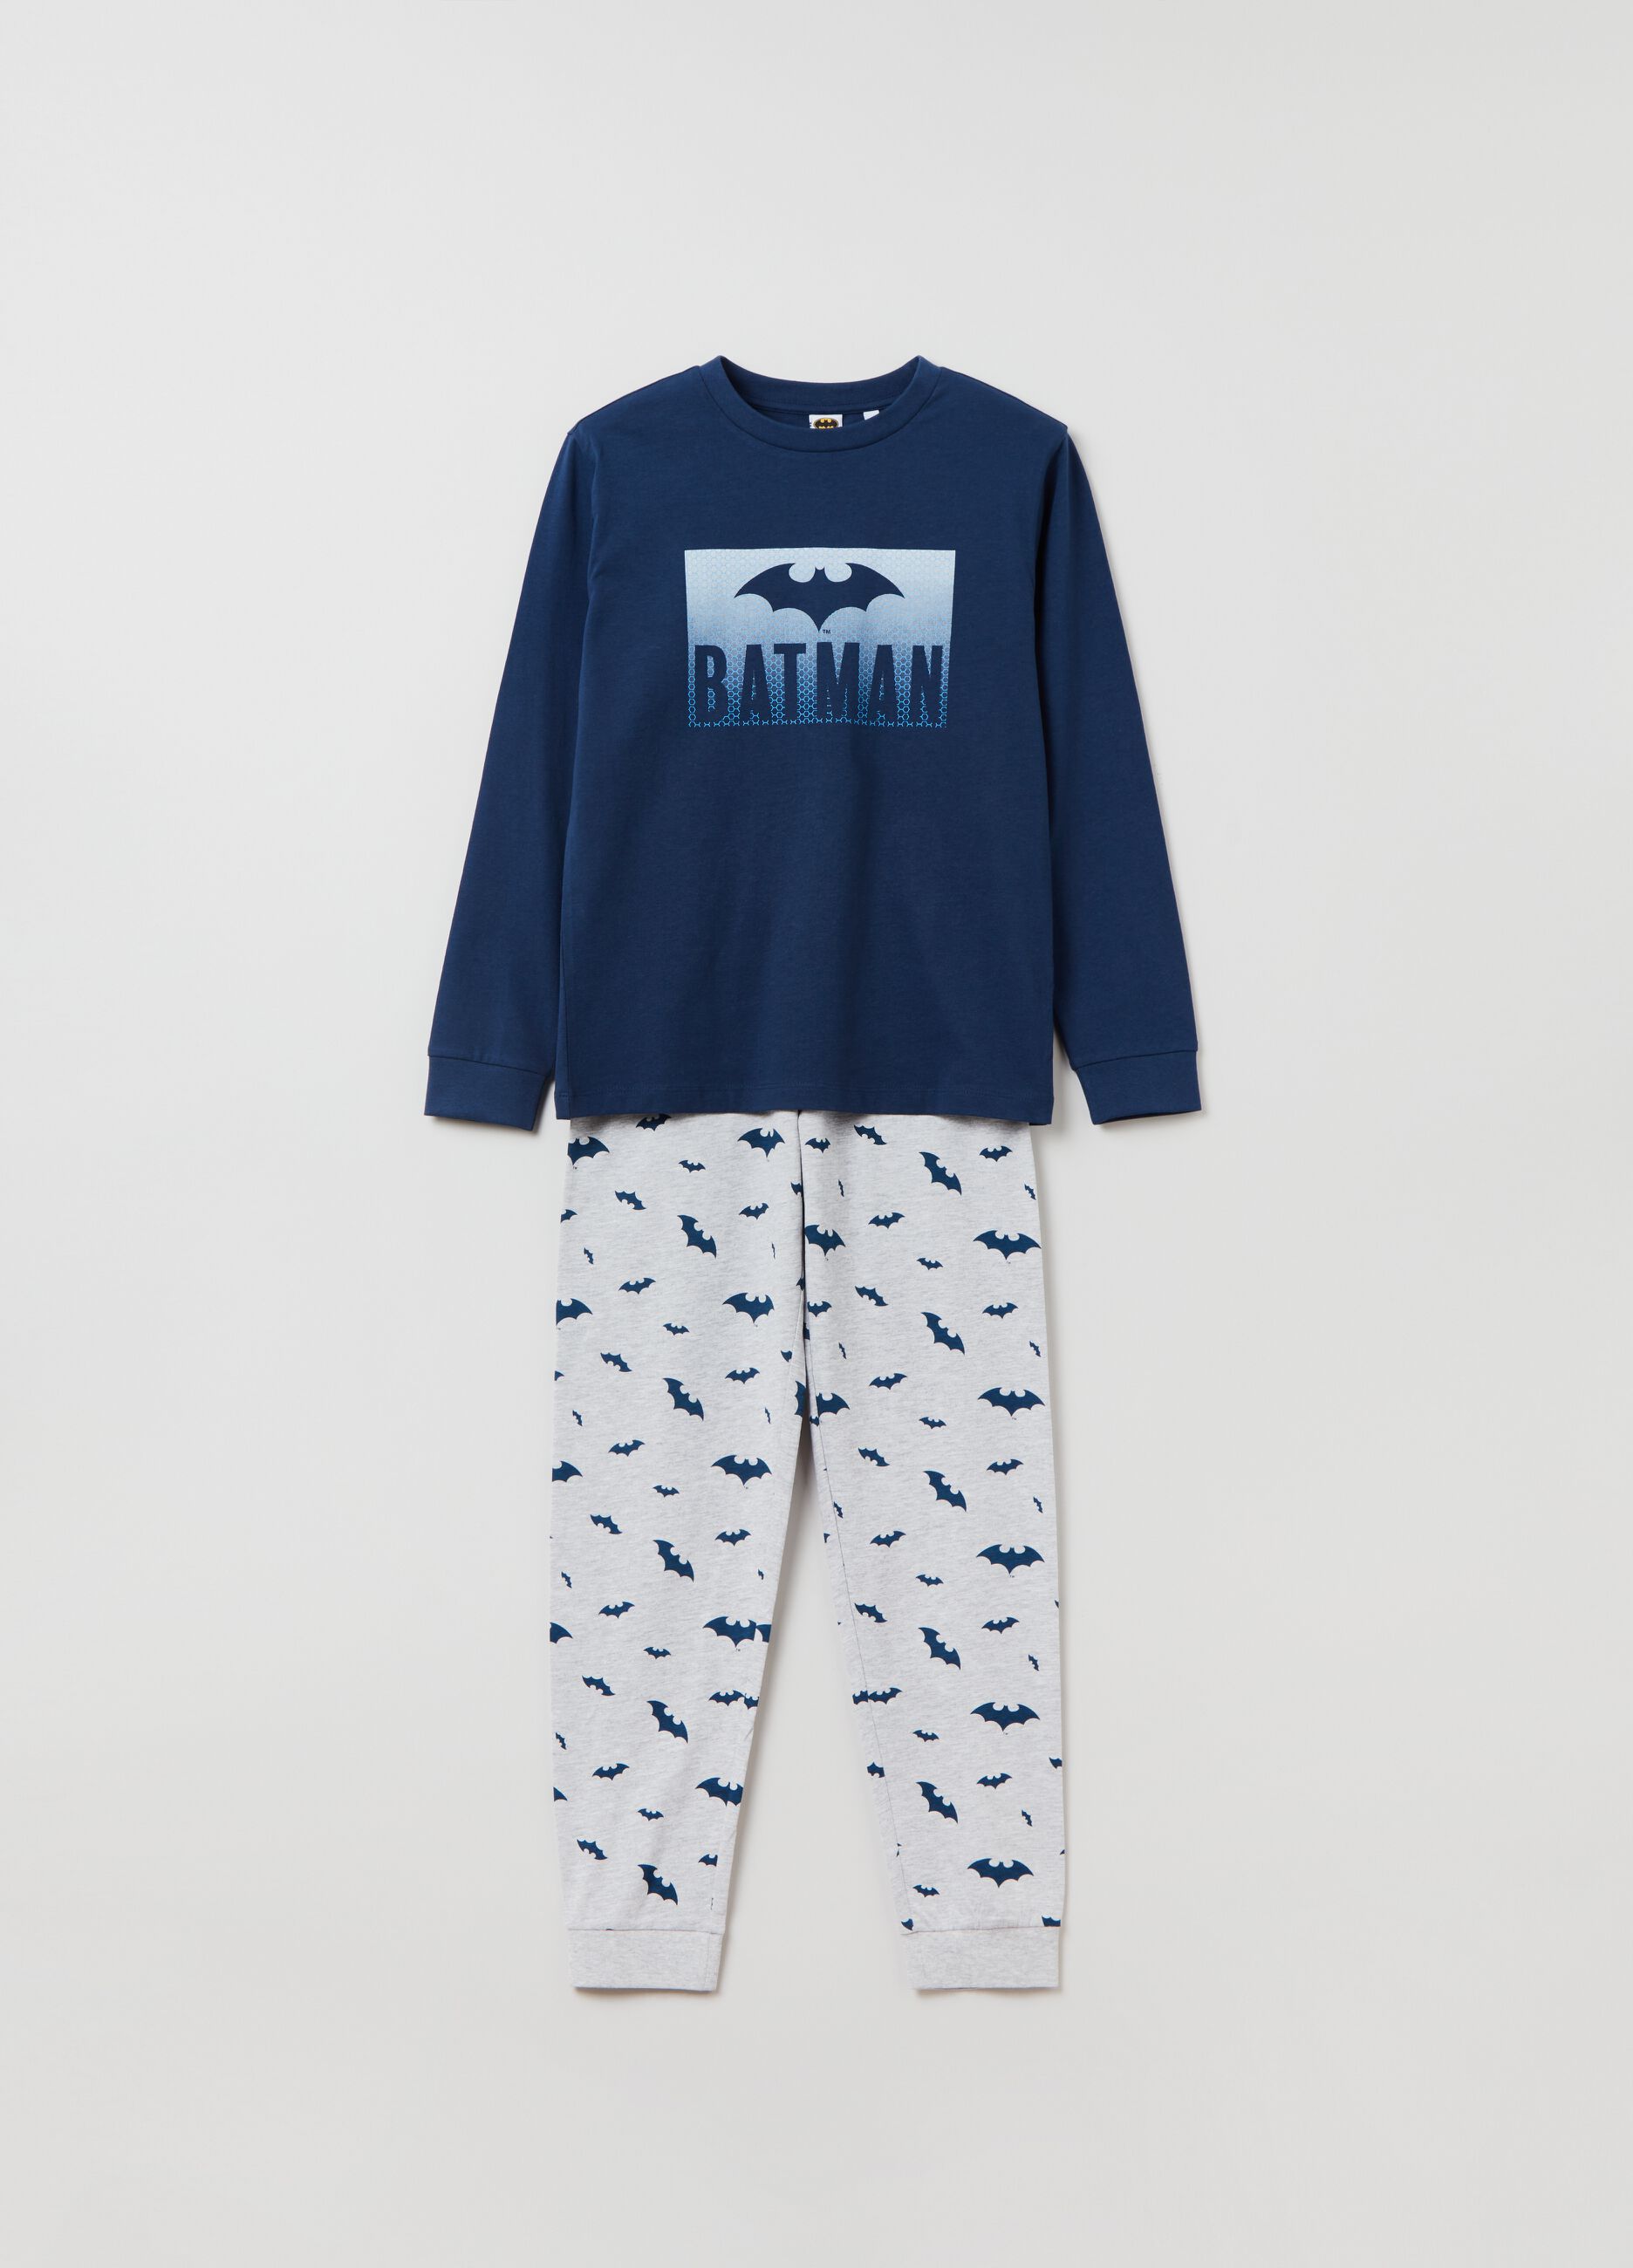 Long pyjamas with Batman print